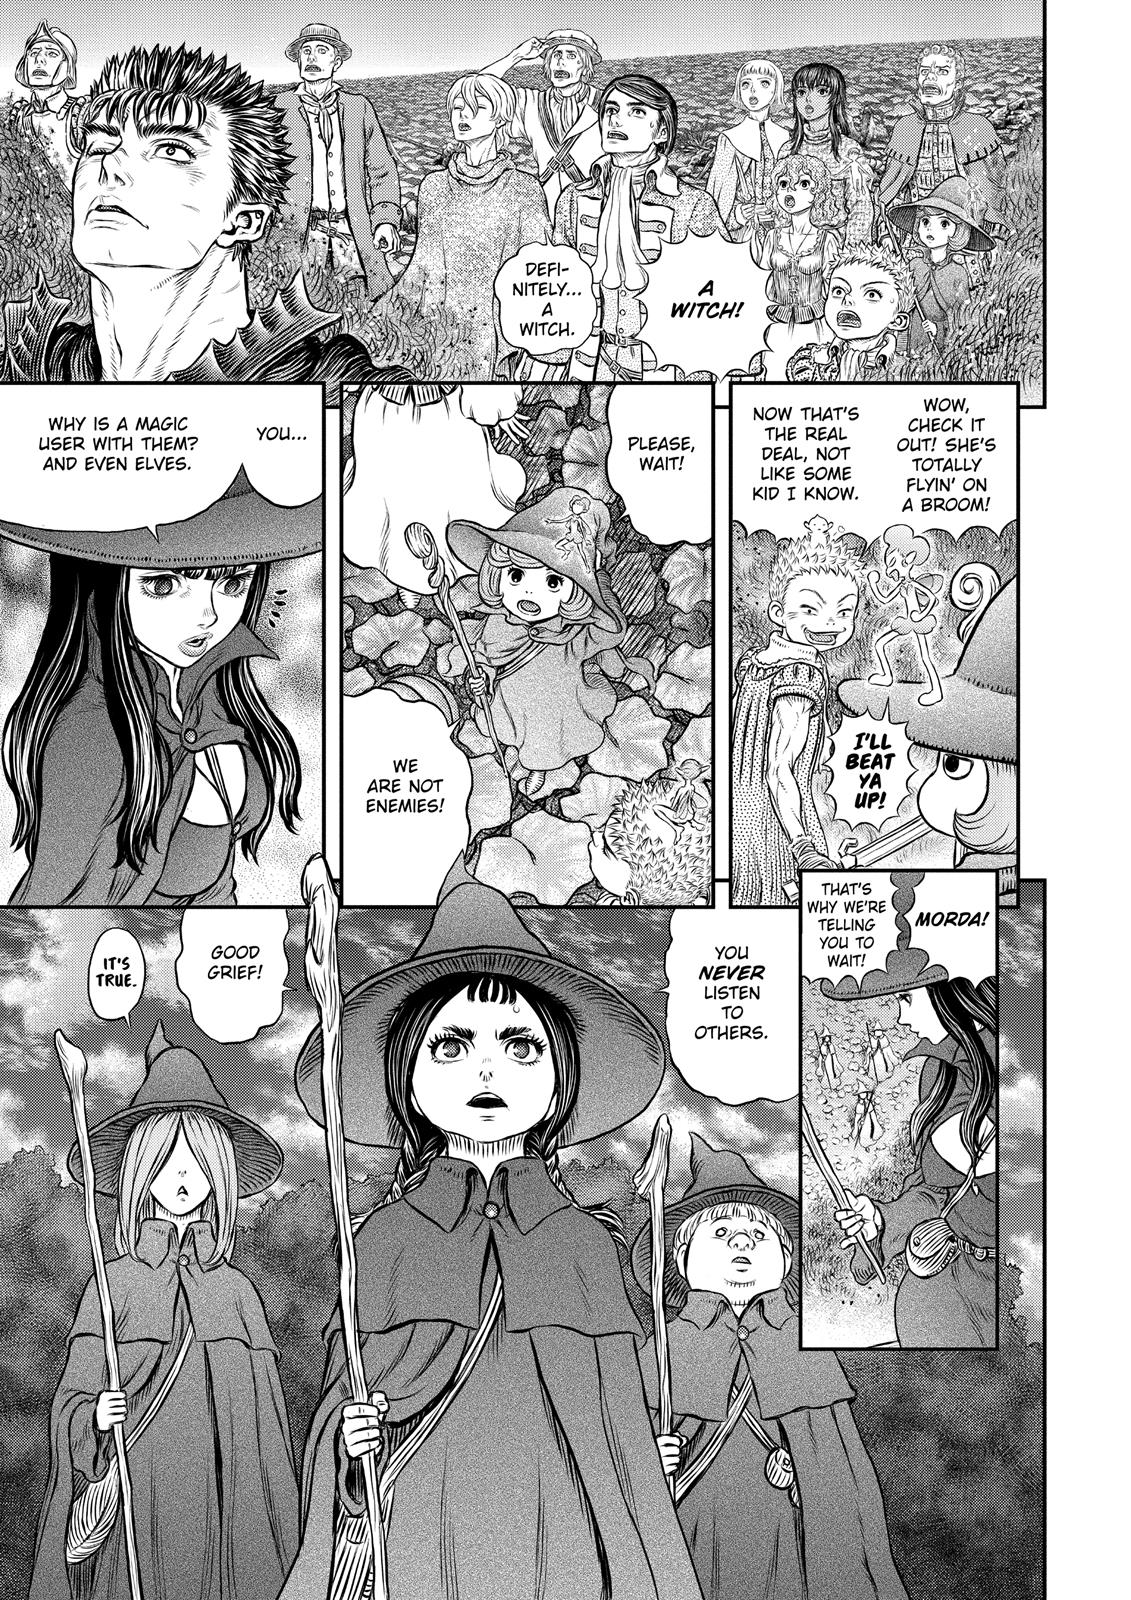 Berserk Manga Chapter 344 image 04